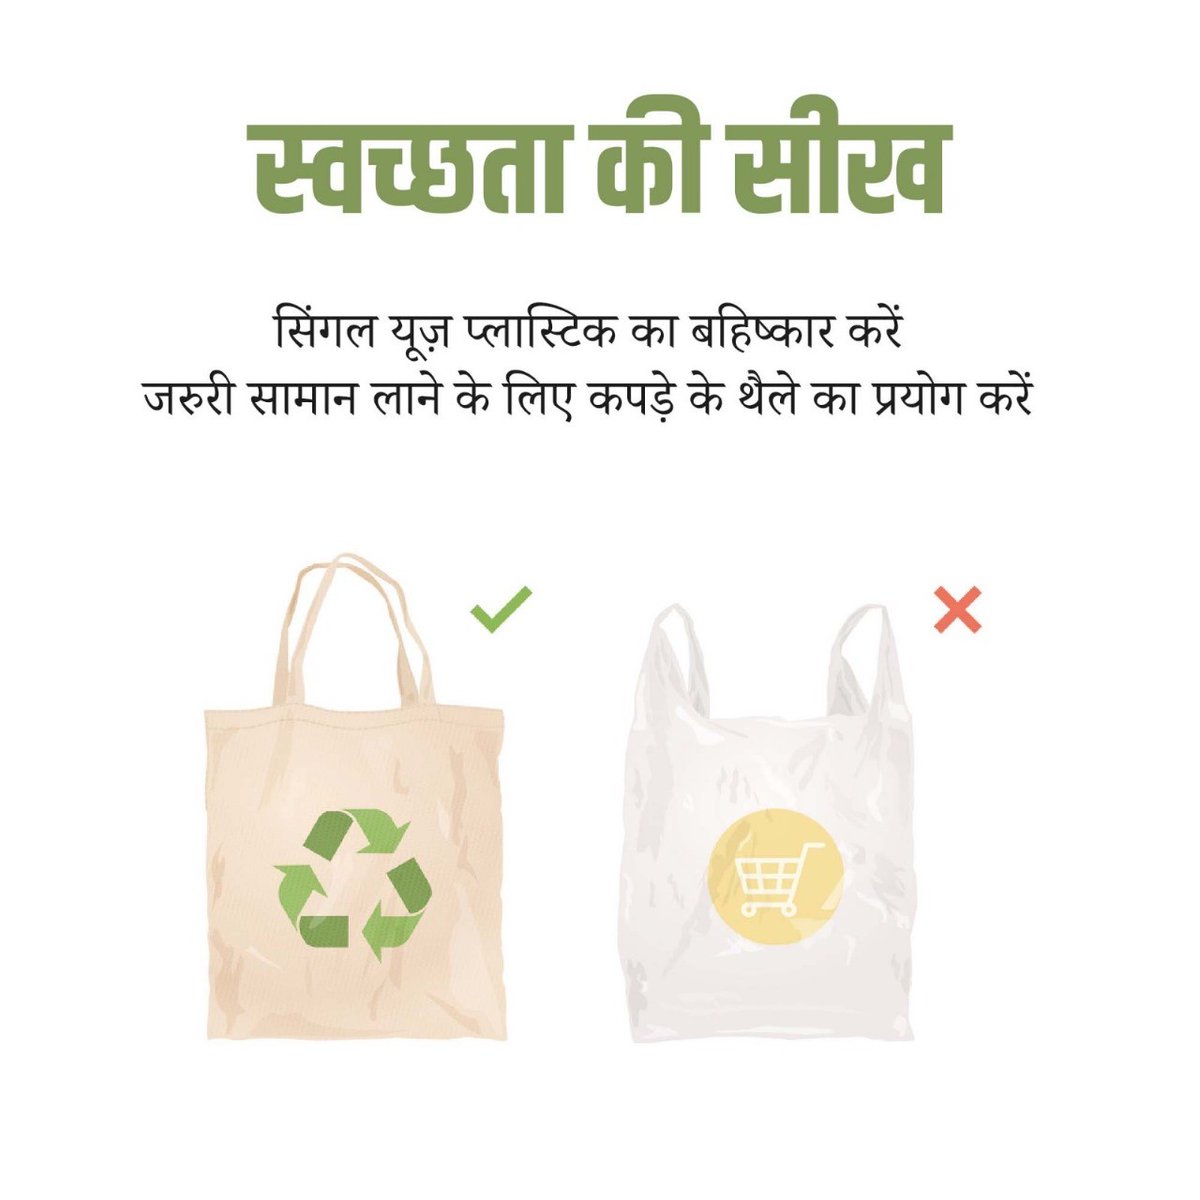 सिंगल यूज़ प्लास्टिक हमारे स्वास्थ्य और पर्यावरण दोनों के लिए हानिकारक है। अत: स्वच्छ और स्वस्थ वातावरण के लिए सिंगल यूज प्लास्टिक से बने उत्पादों के स्थान पर कागज, जूट आदि से बने उत्पादों का उपयोग करें। #GarbageFreeCities #IndiaVsGarbage #SayNoToPlastic #SwachhataKiSeekh